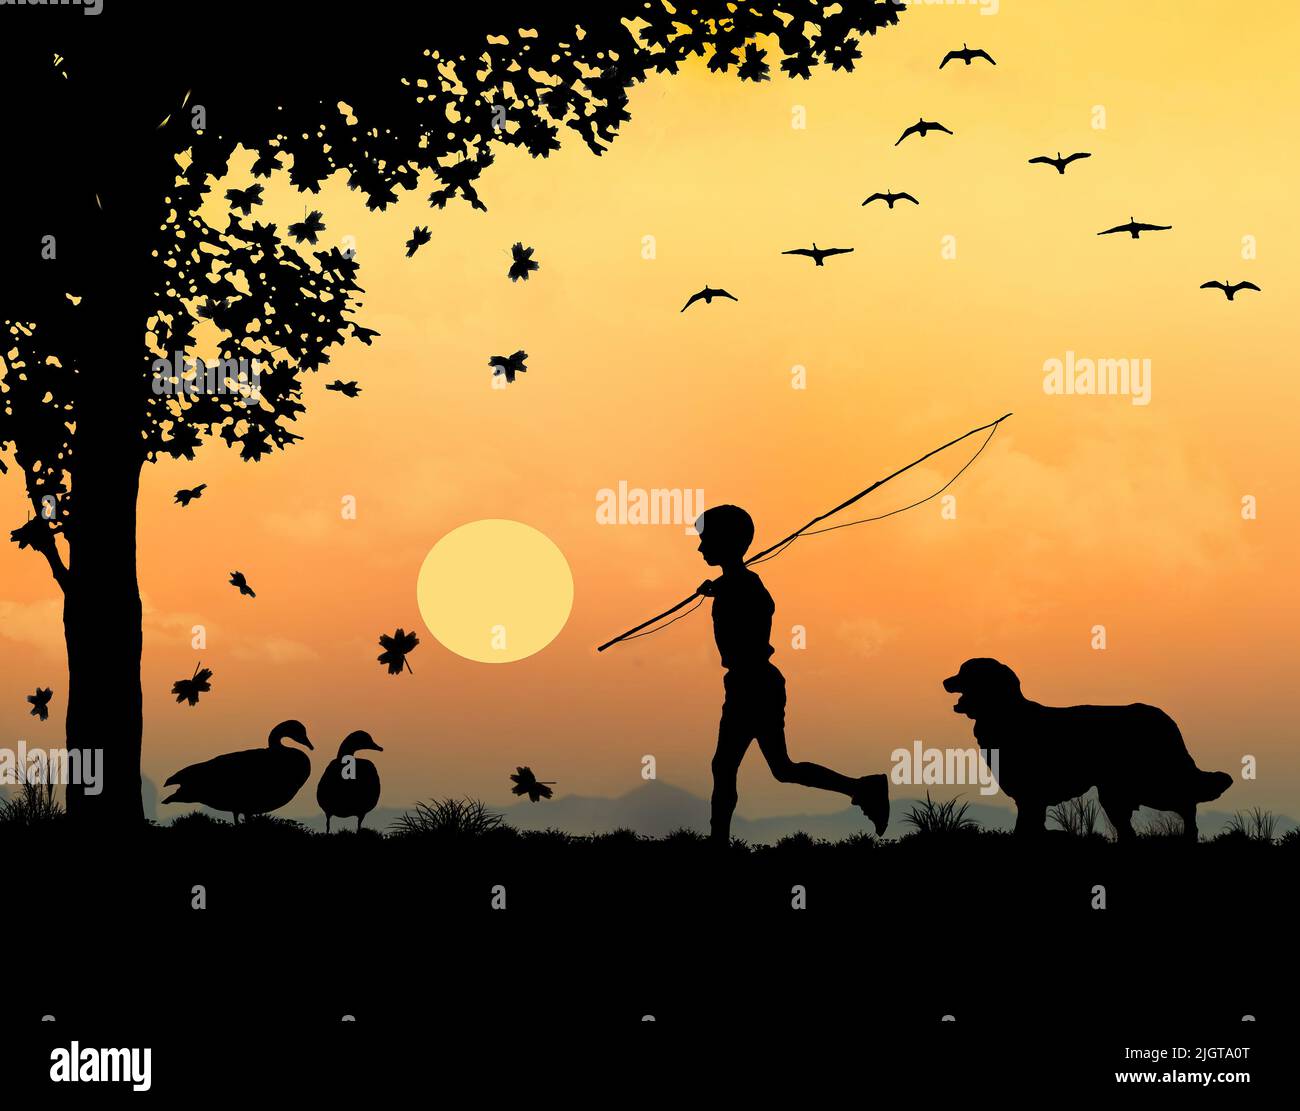 Un niño con una caña de pescar y su perro son vistos caminando mientras las hojas caen de un árbol de arce y los gansos de canadá vuelan y se sientan cerca en una ilustración de 3. Foto de stock